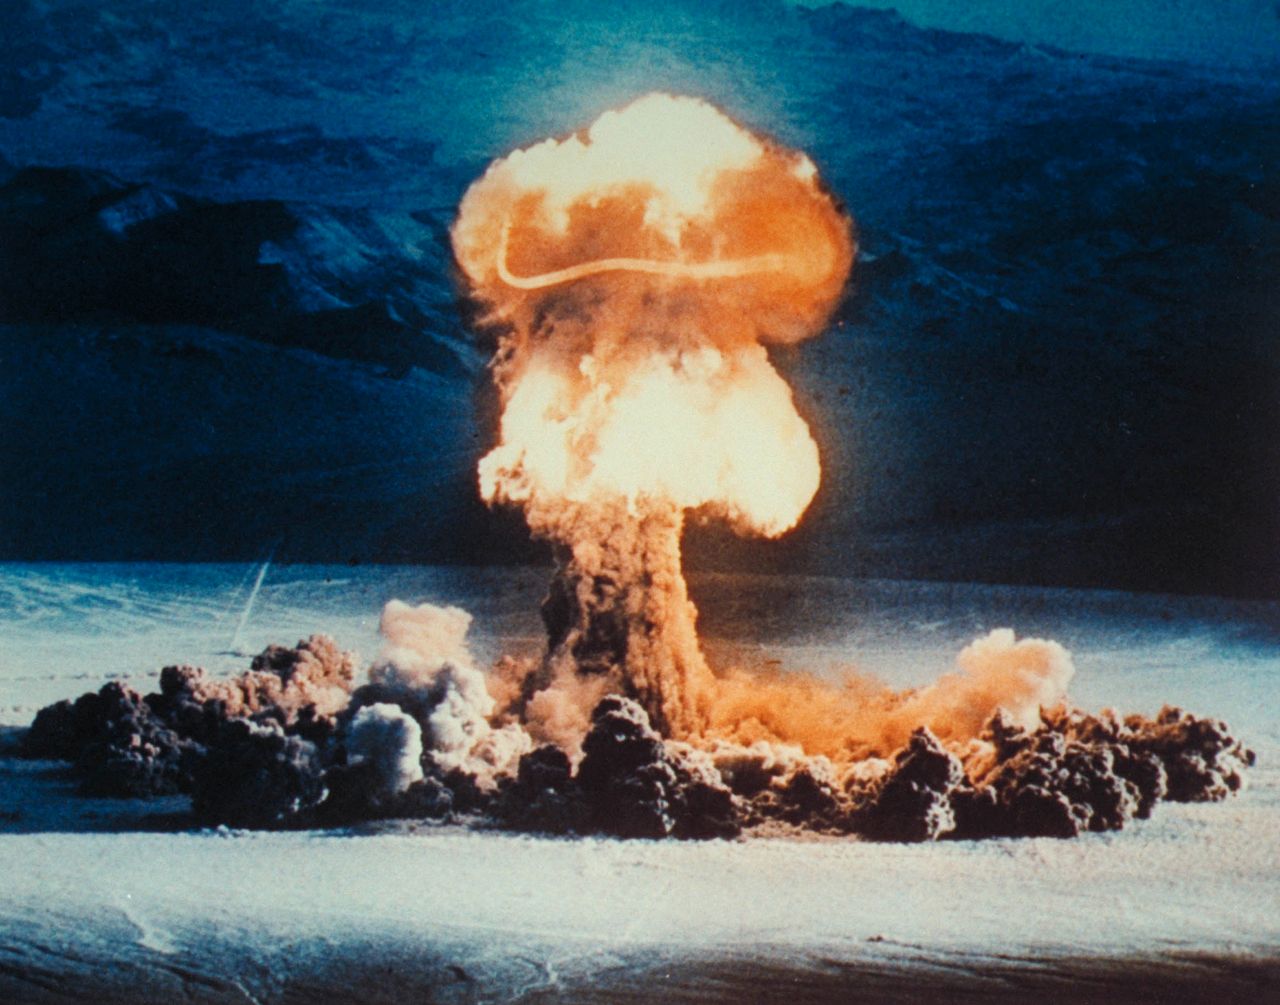 Jak przeżyć wybuch bomby atomowej? Poradnik przetrwania według Amerykanów